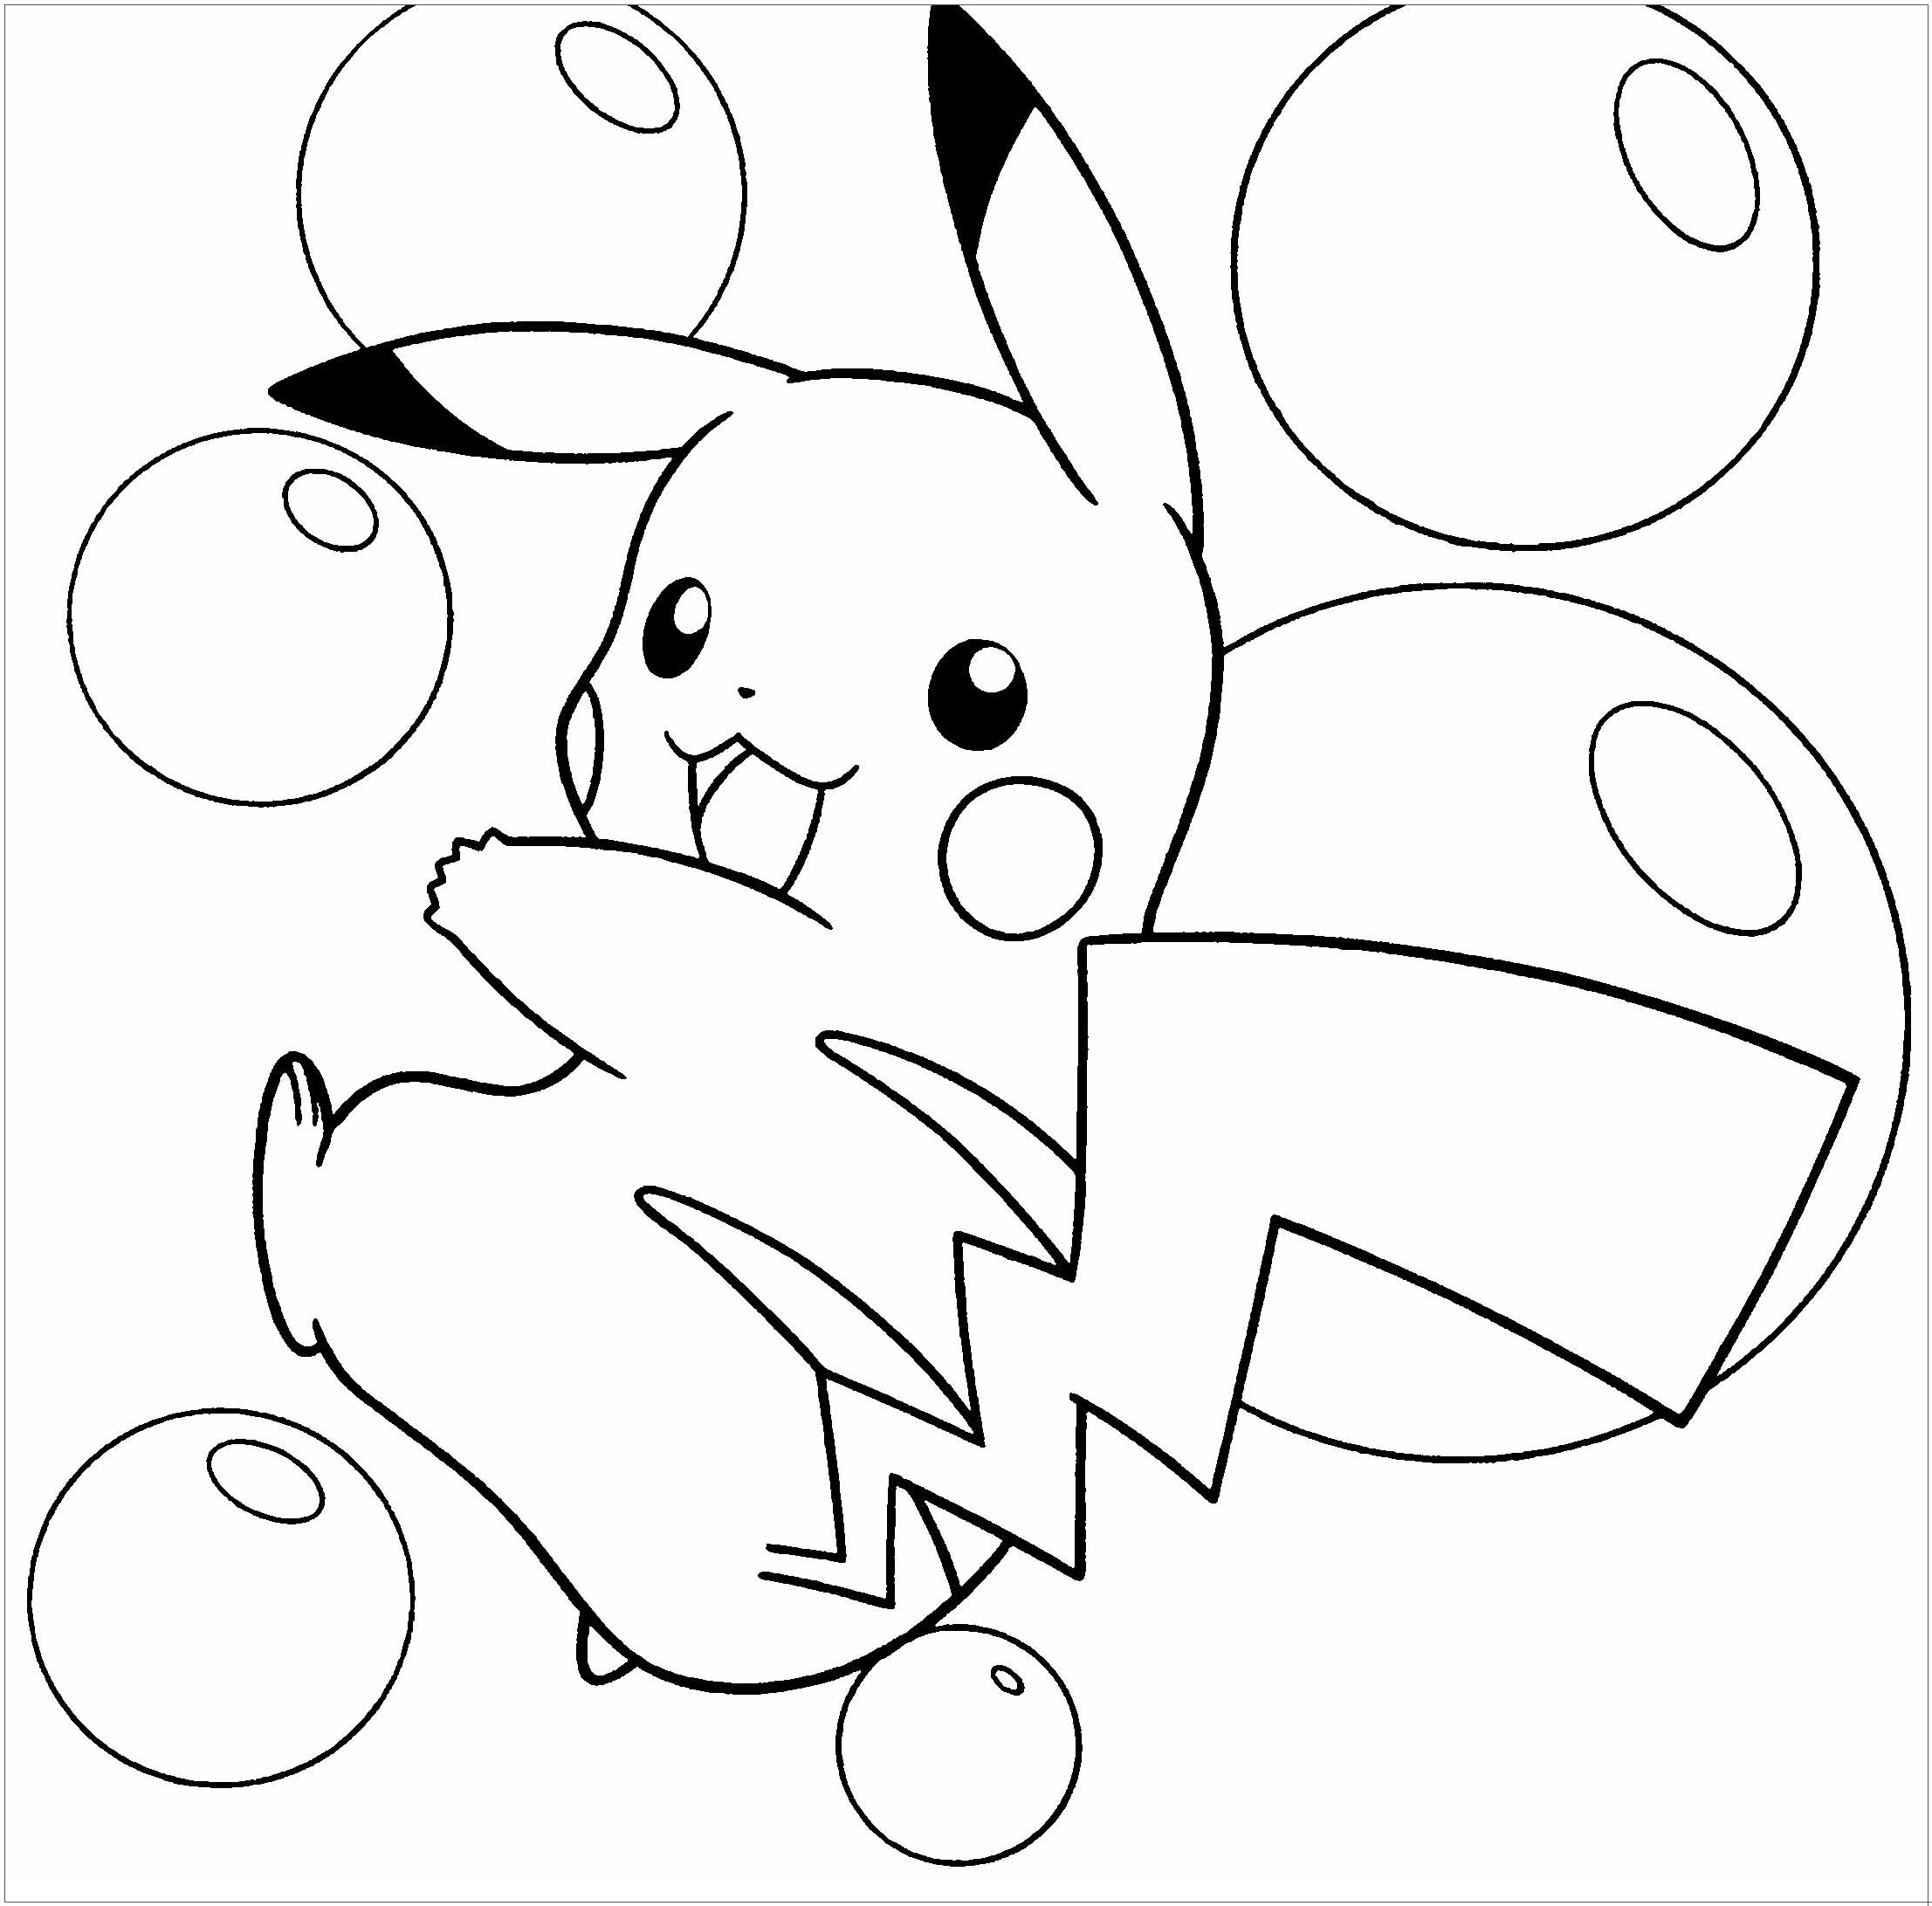 Tranh tô màu Pikachu chơi với bong bóng